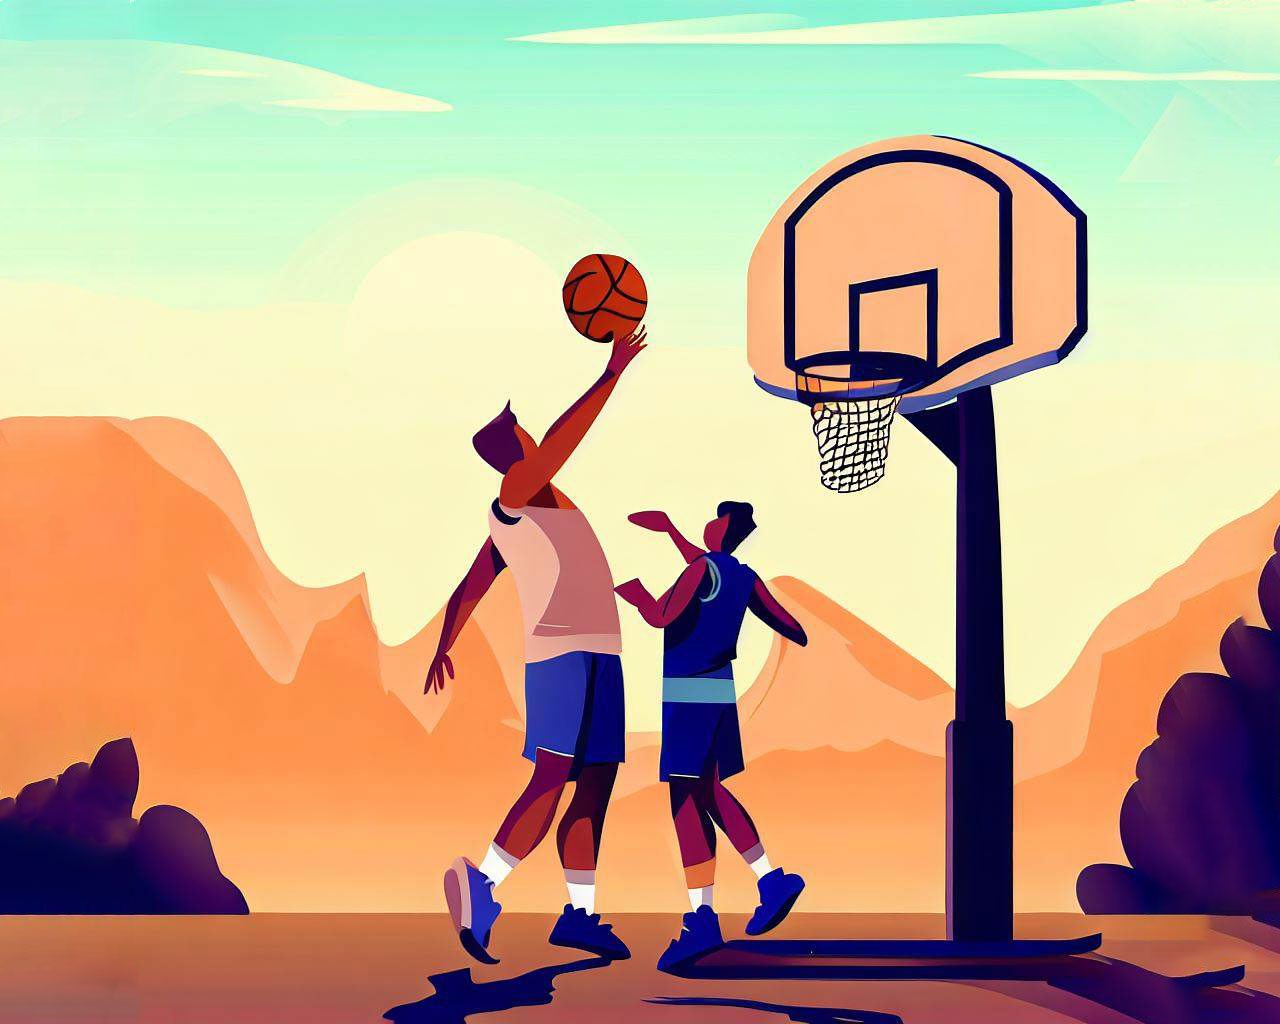 Guia com todas as regras do basquete: conheça o jogo a fundo!